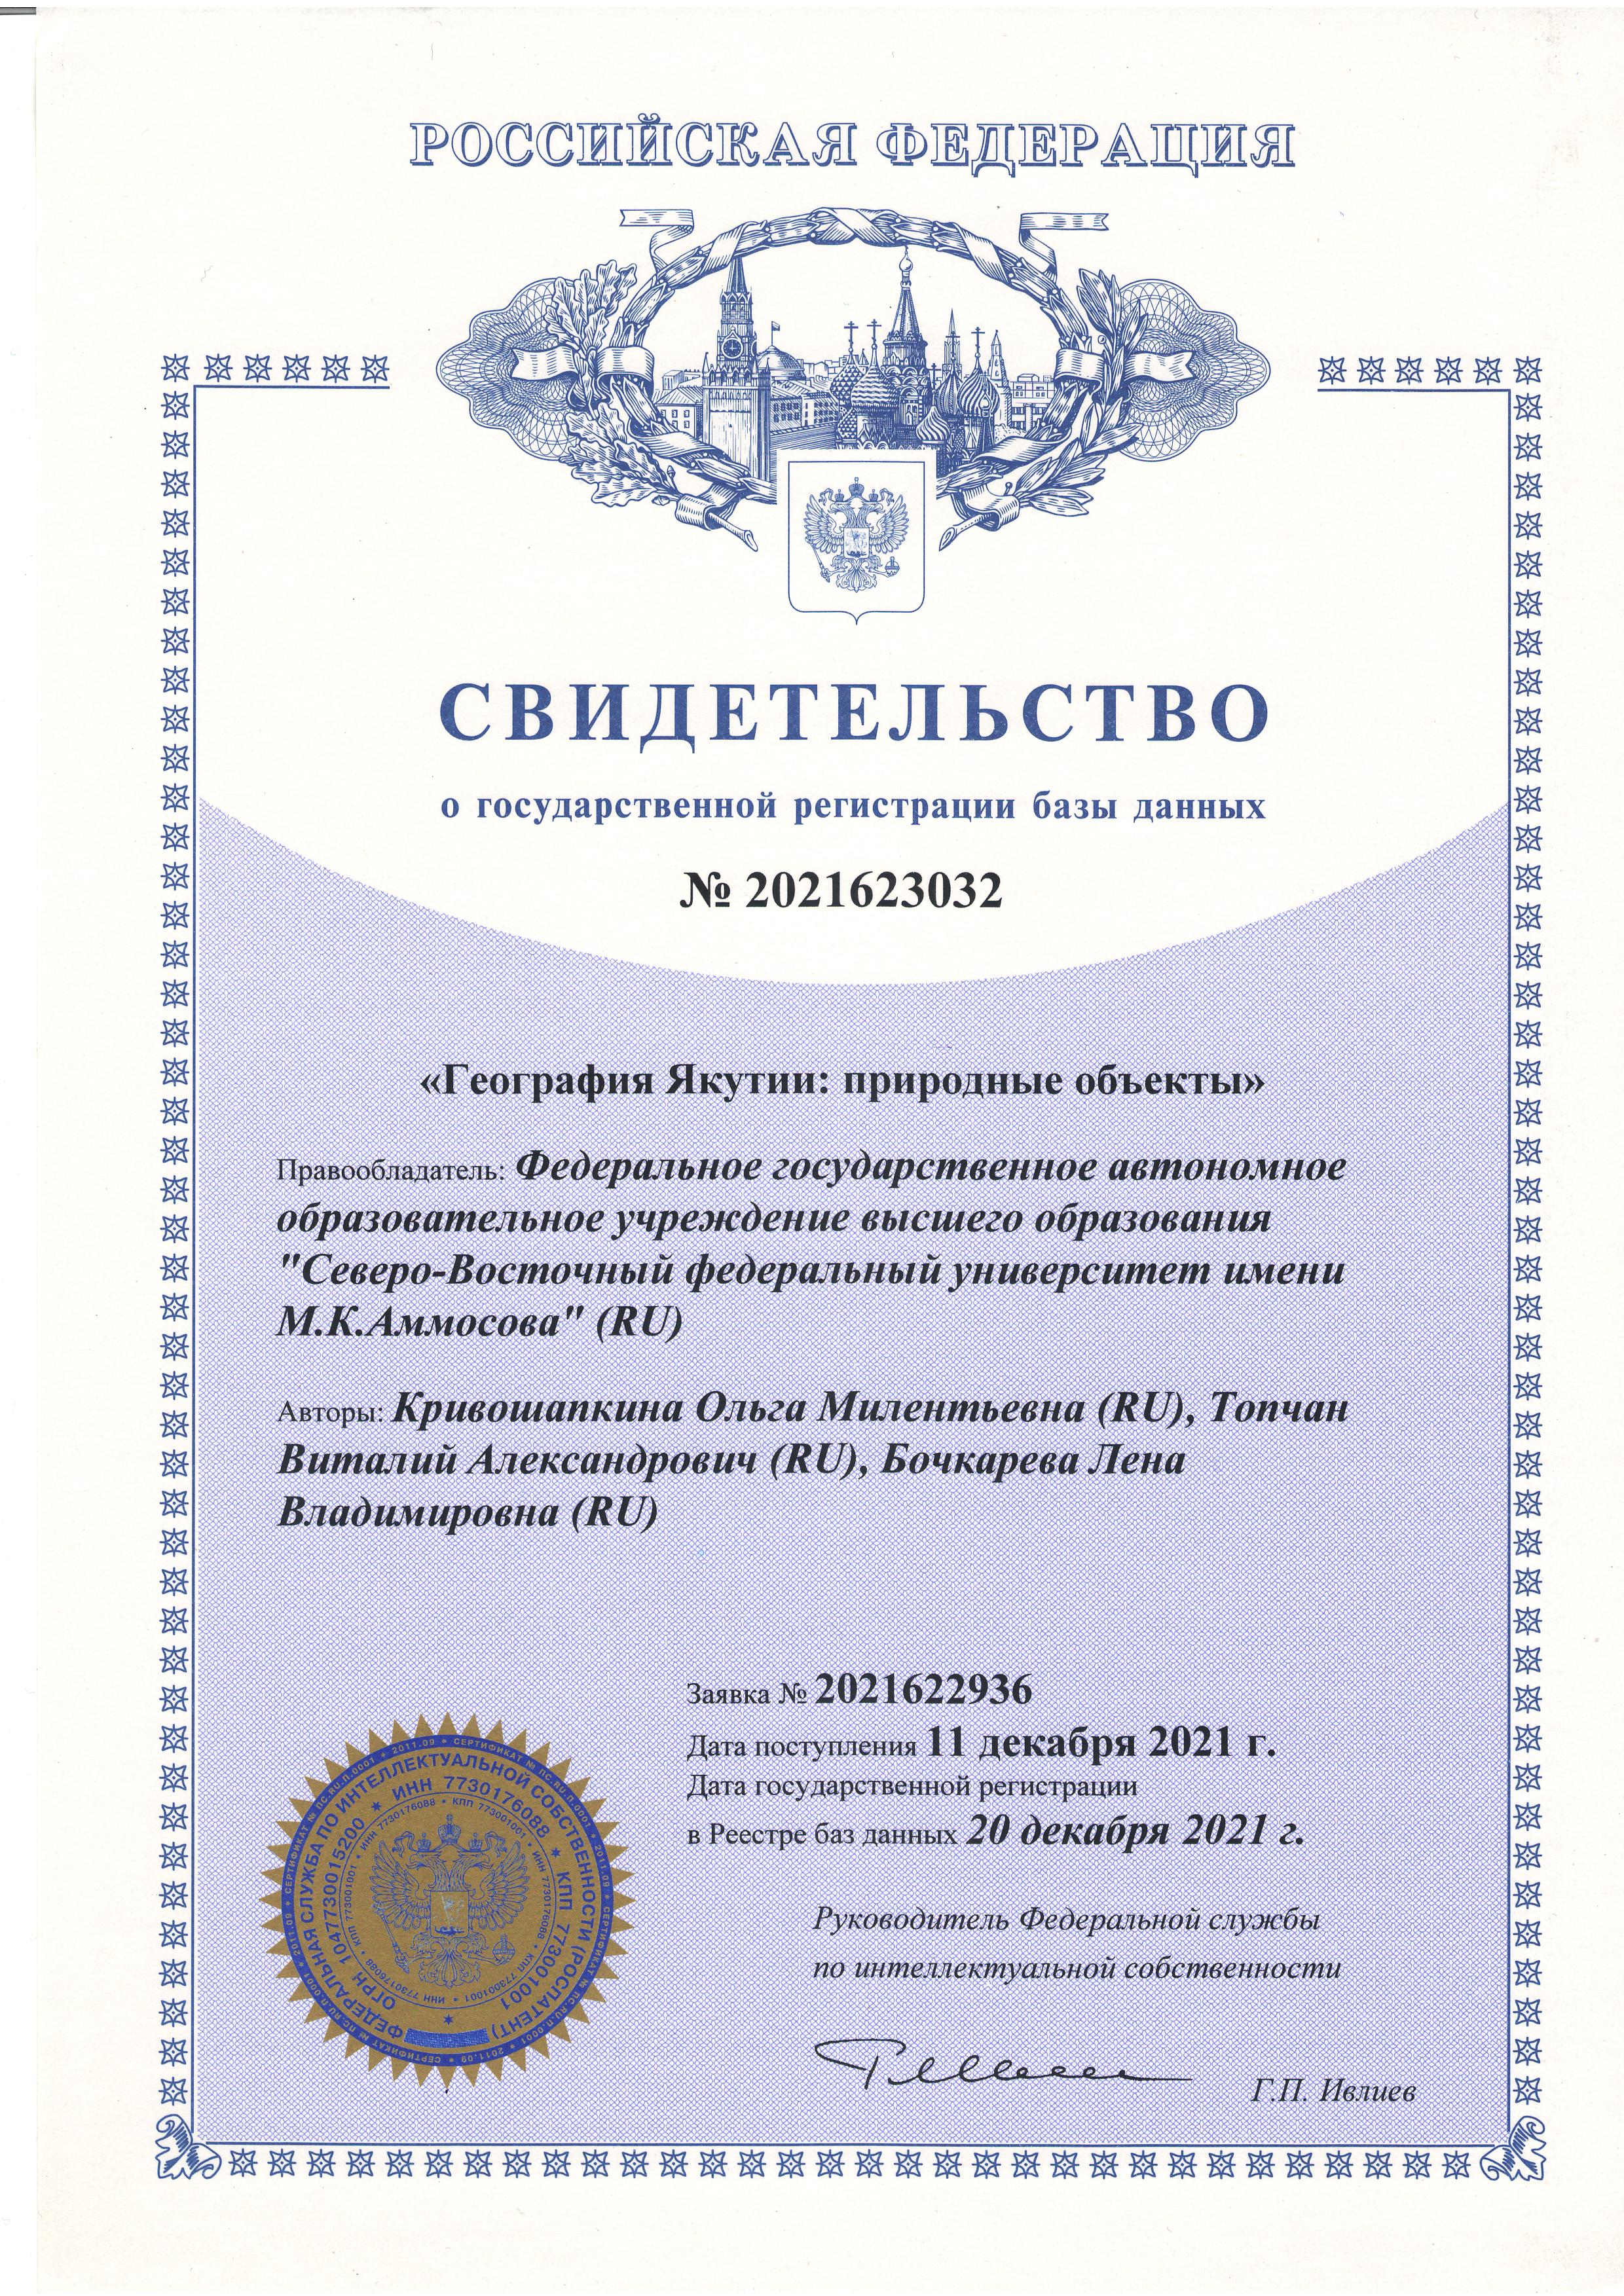 Получено свидетельство РФ о государственной регистрации базы данных «География Якутии: природные объекты»